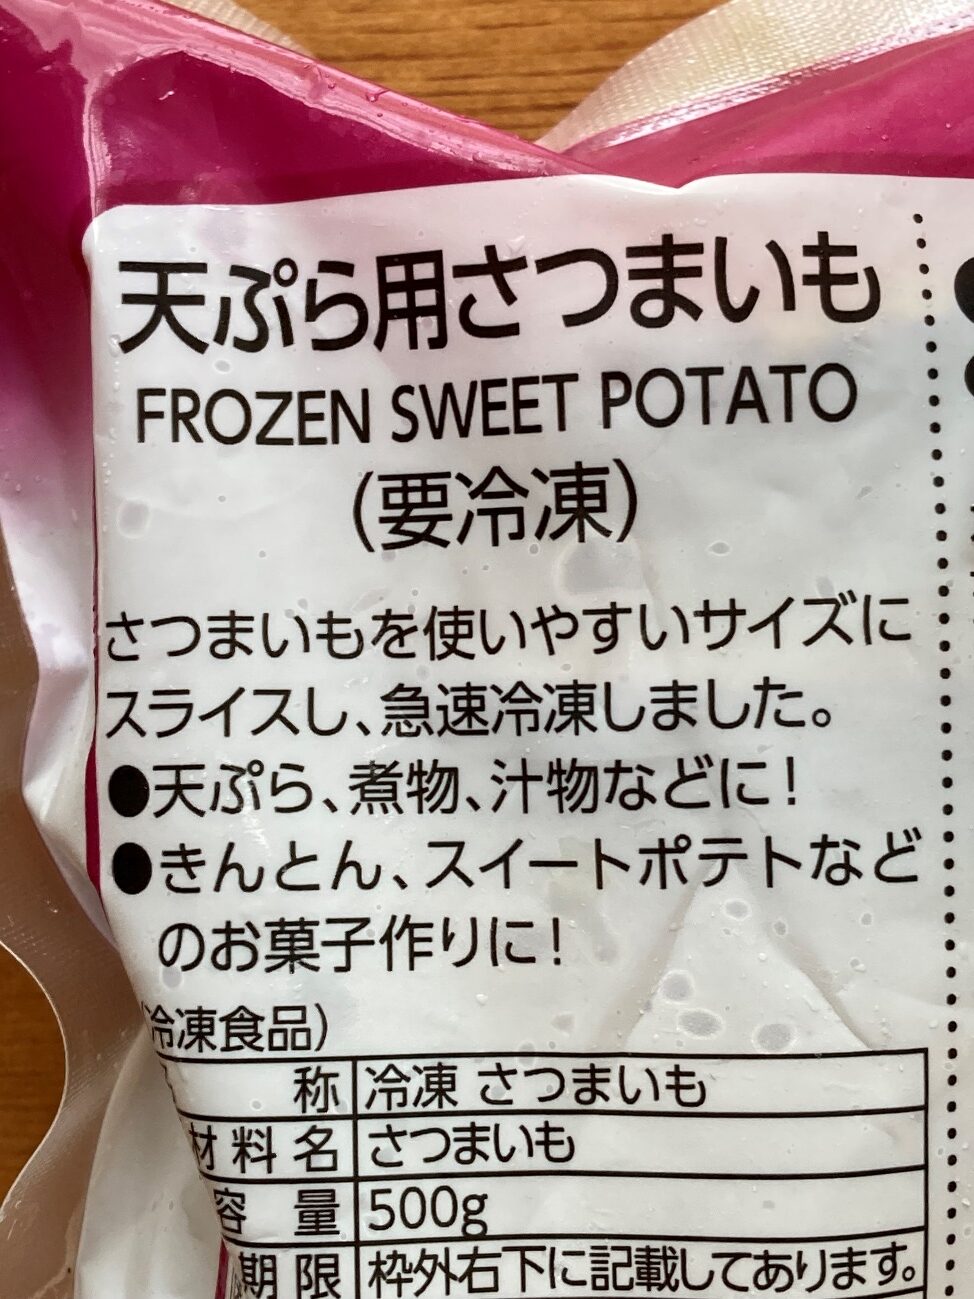 業務スーパーの天ぷら用さつまいものパッケージ裏面にある商品説明文